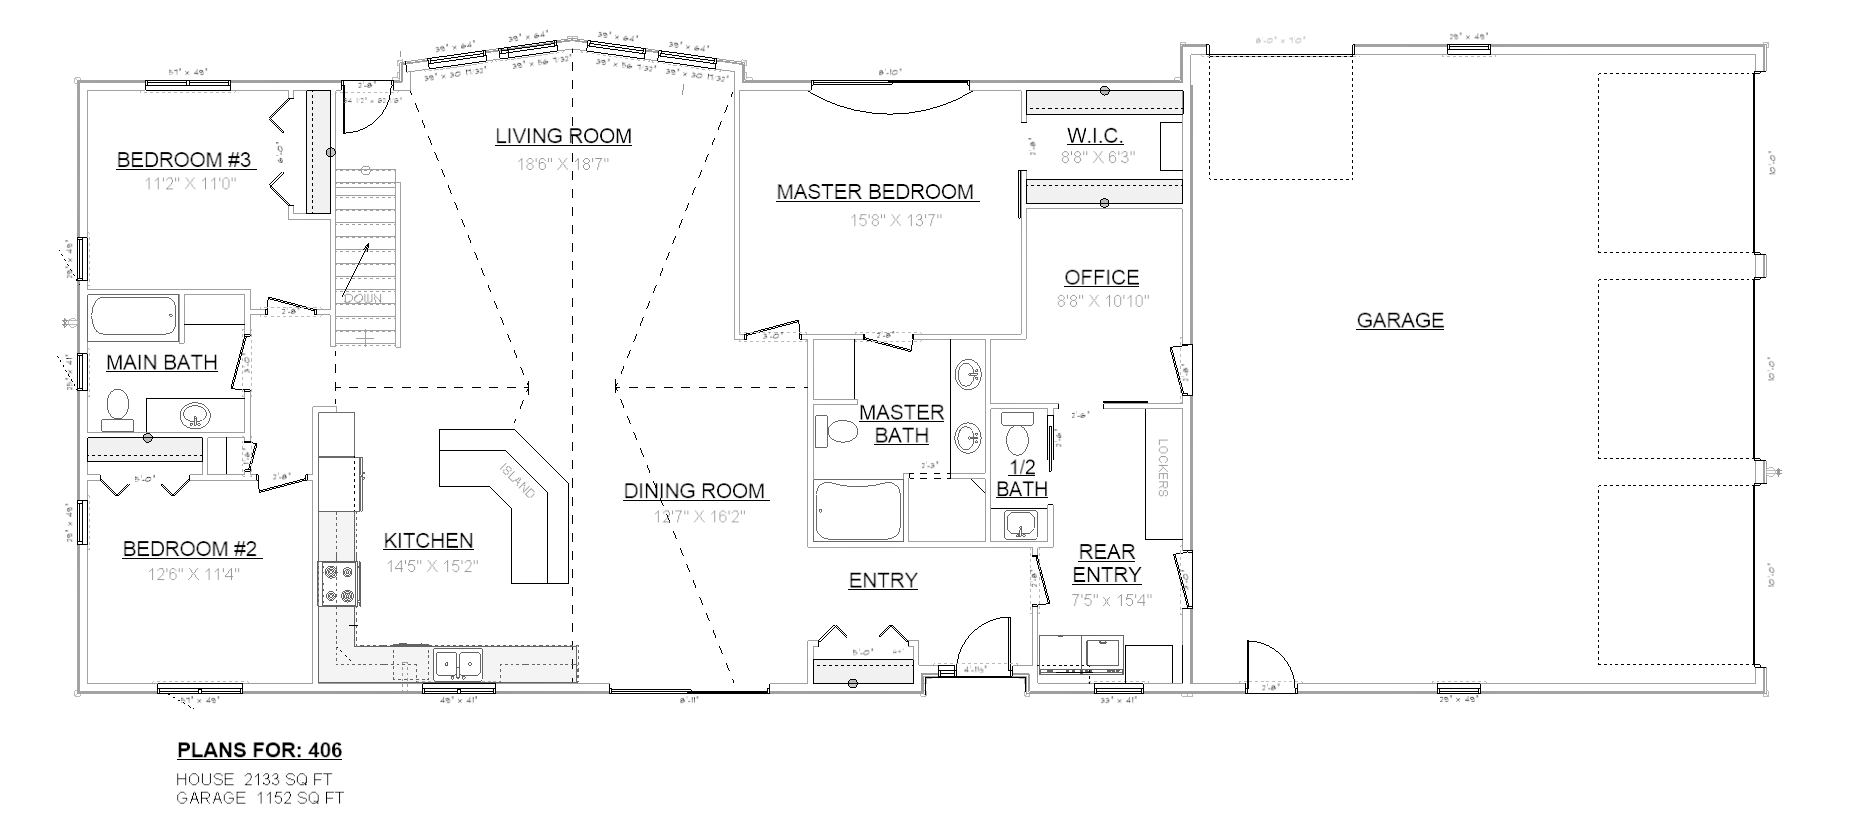 Penner Homes Floor Plan Id: 406